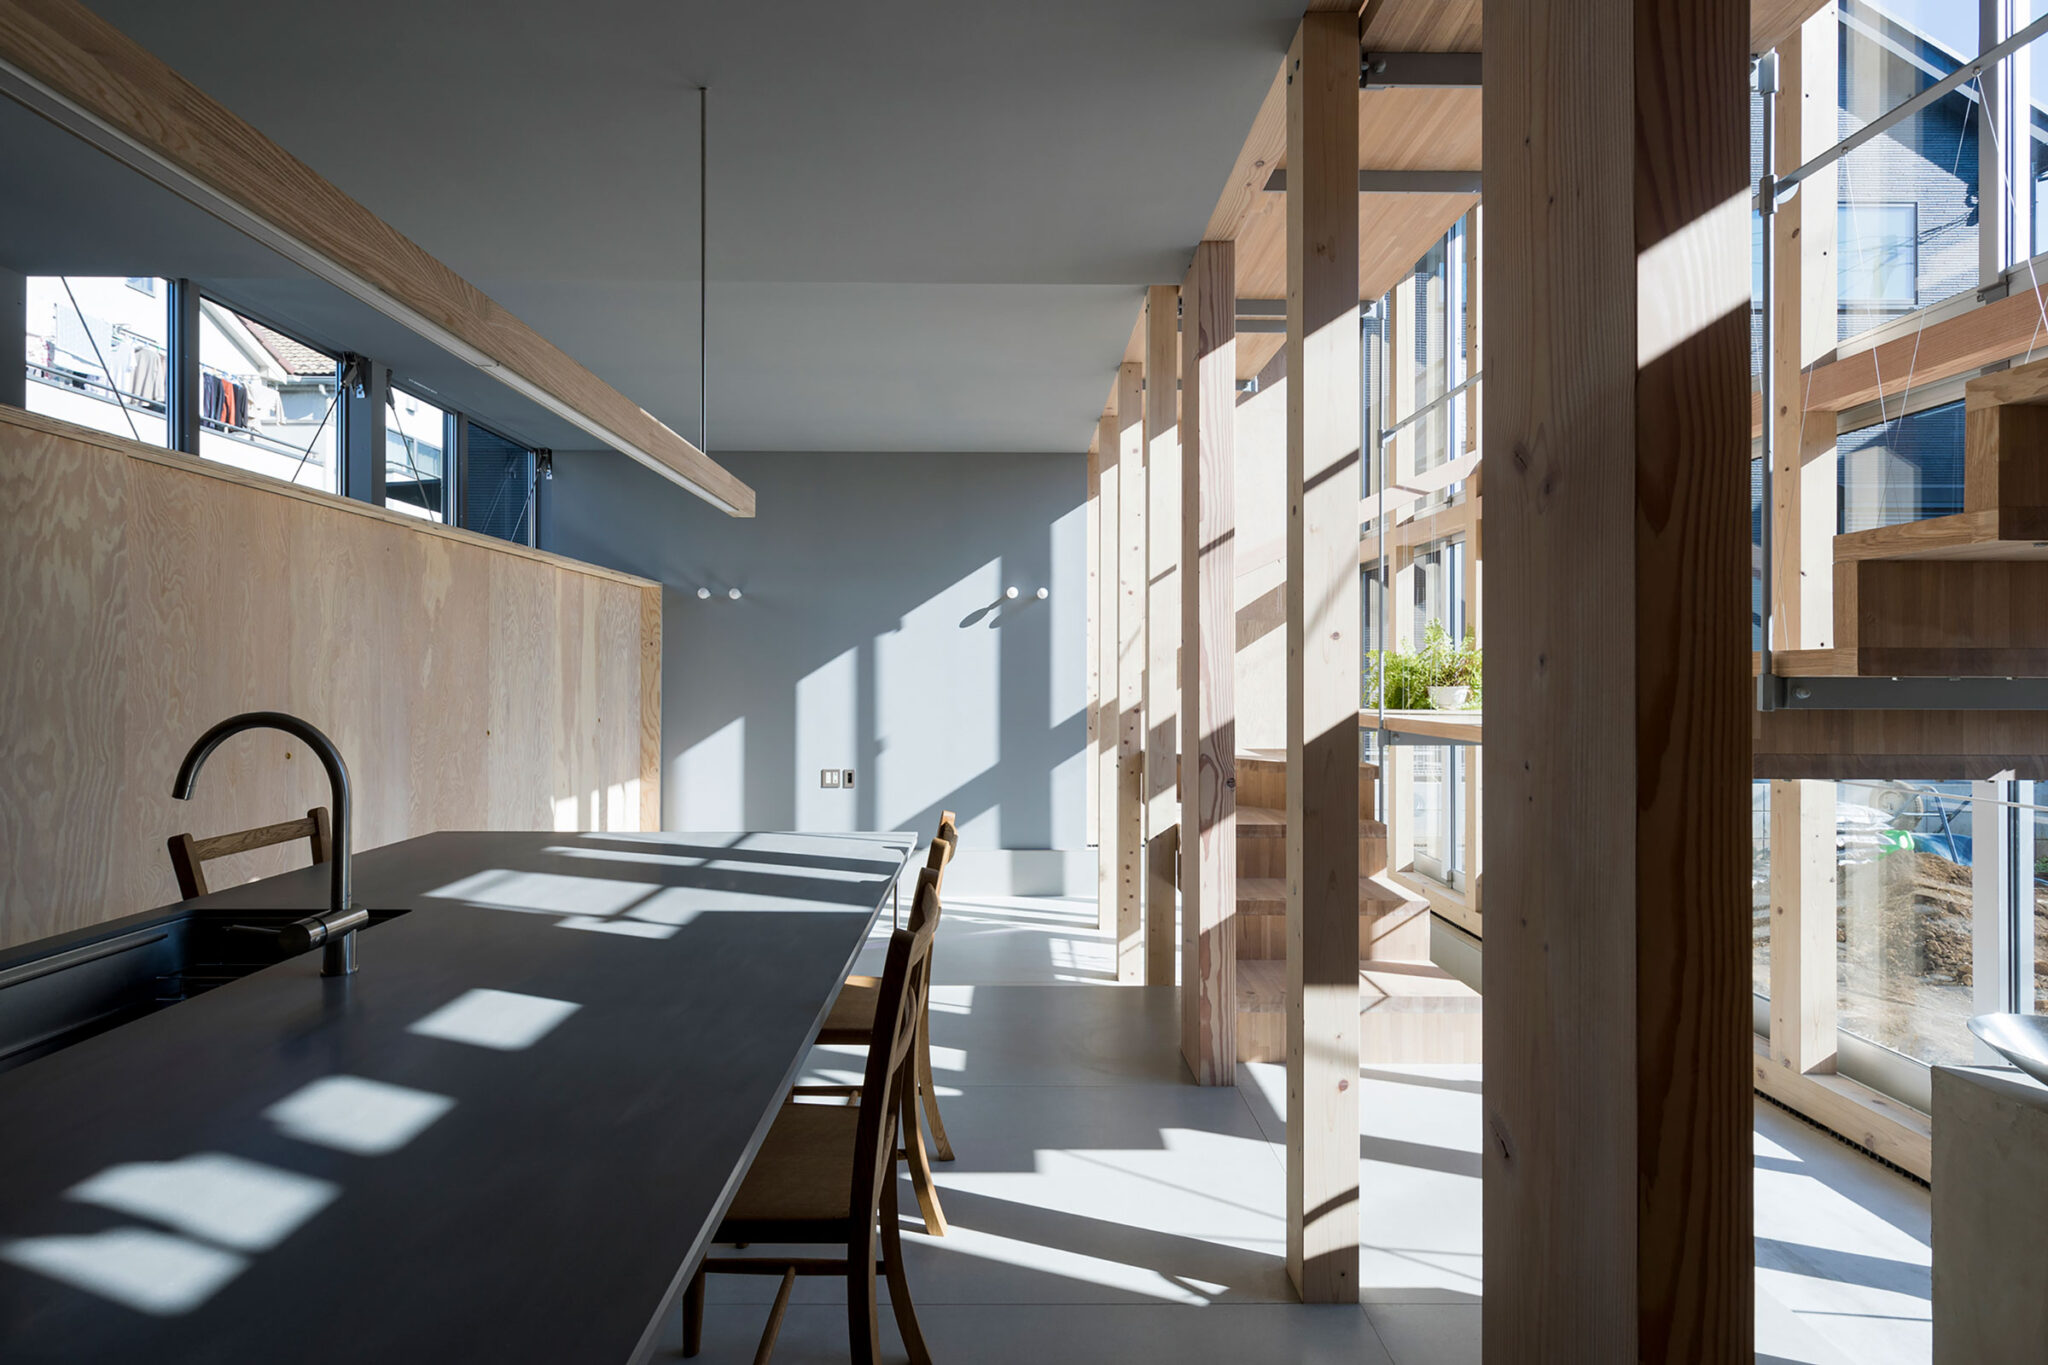 桐圭佑 Kiri Architectsによる 東京 西東京市の住宅 明るい階段室 空間全体の3分の1を占める大きな階段室が様々な視点や風景を生み出すと共に 環境に対する緩衝空間としても機能 Architecturephoto Net